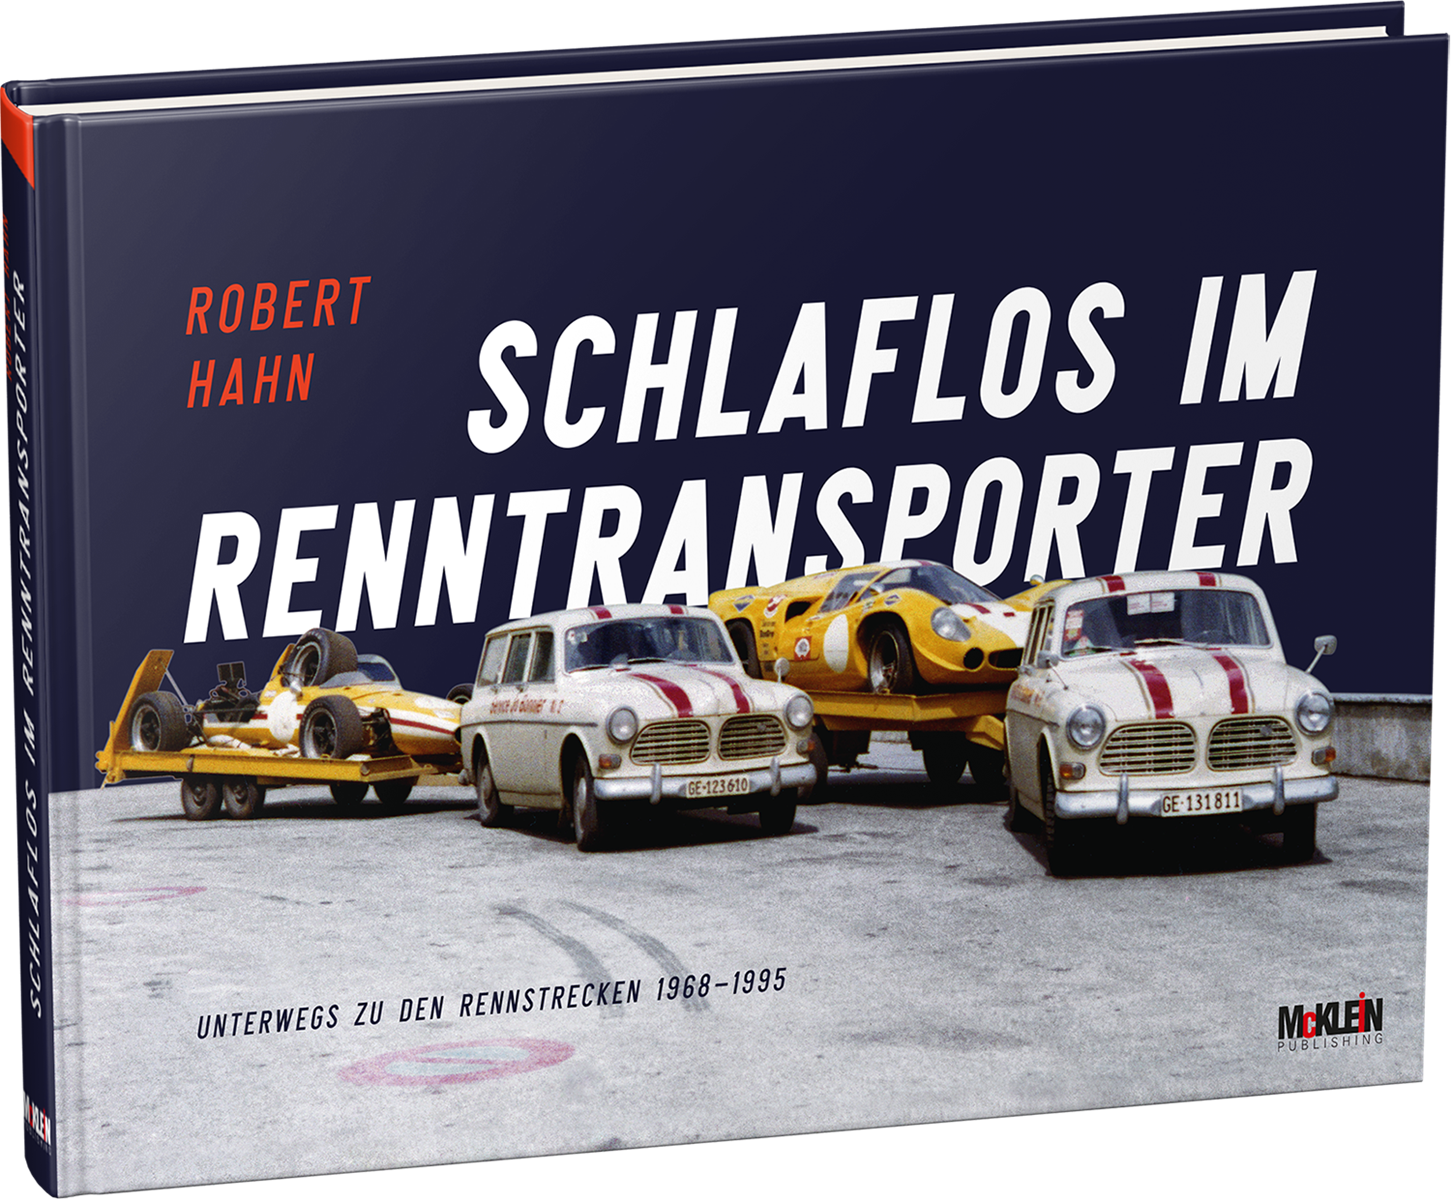 Schlaflos im Renntransporter - Robert Hahn | Books | McKlein Store |  RallyWebShop / RacingWebShop / McKlein Store